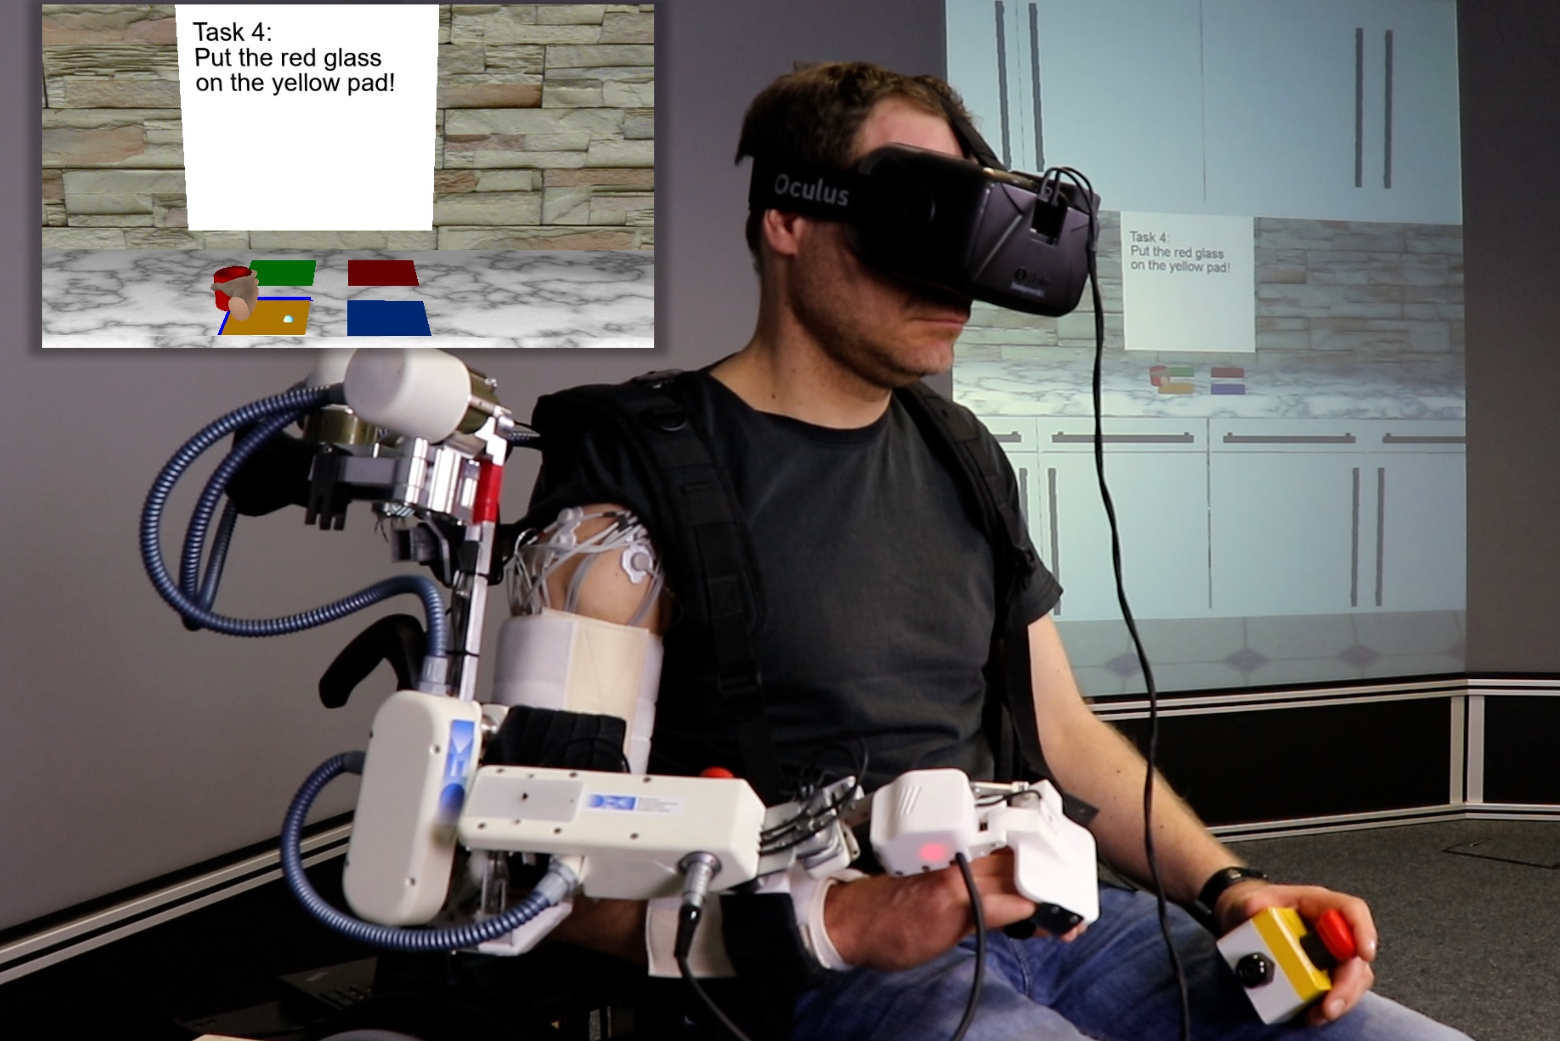 Ein Mann trägt eine VR-Brille und ist an einem Arm verkabelt